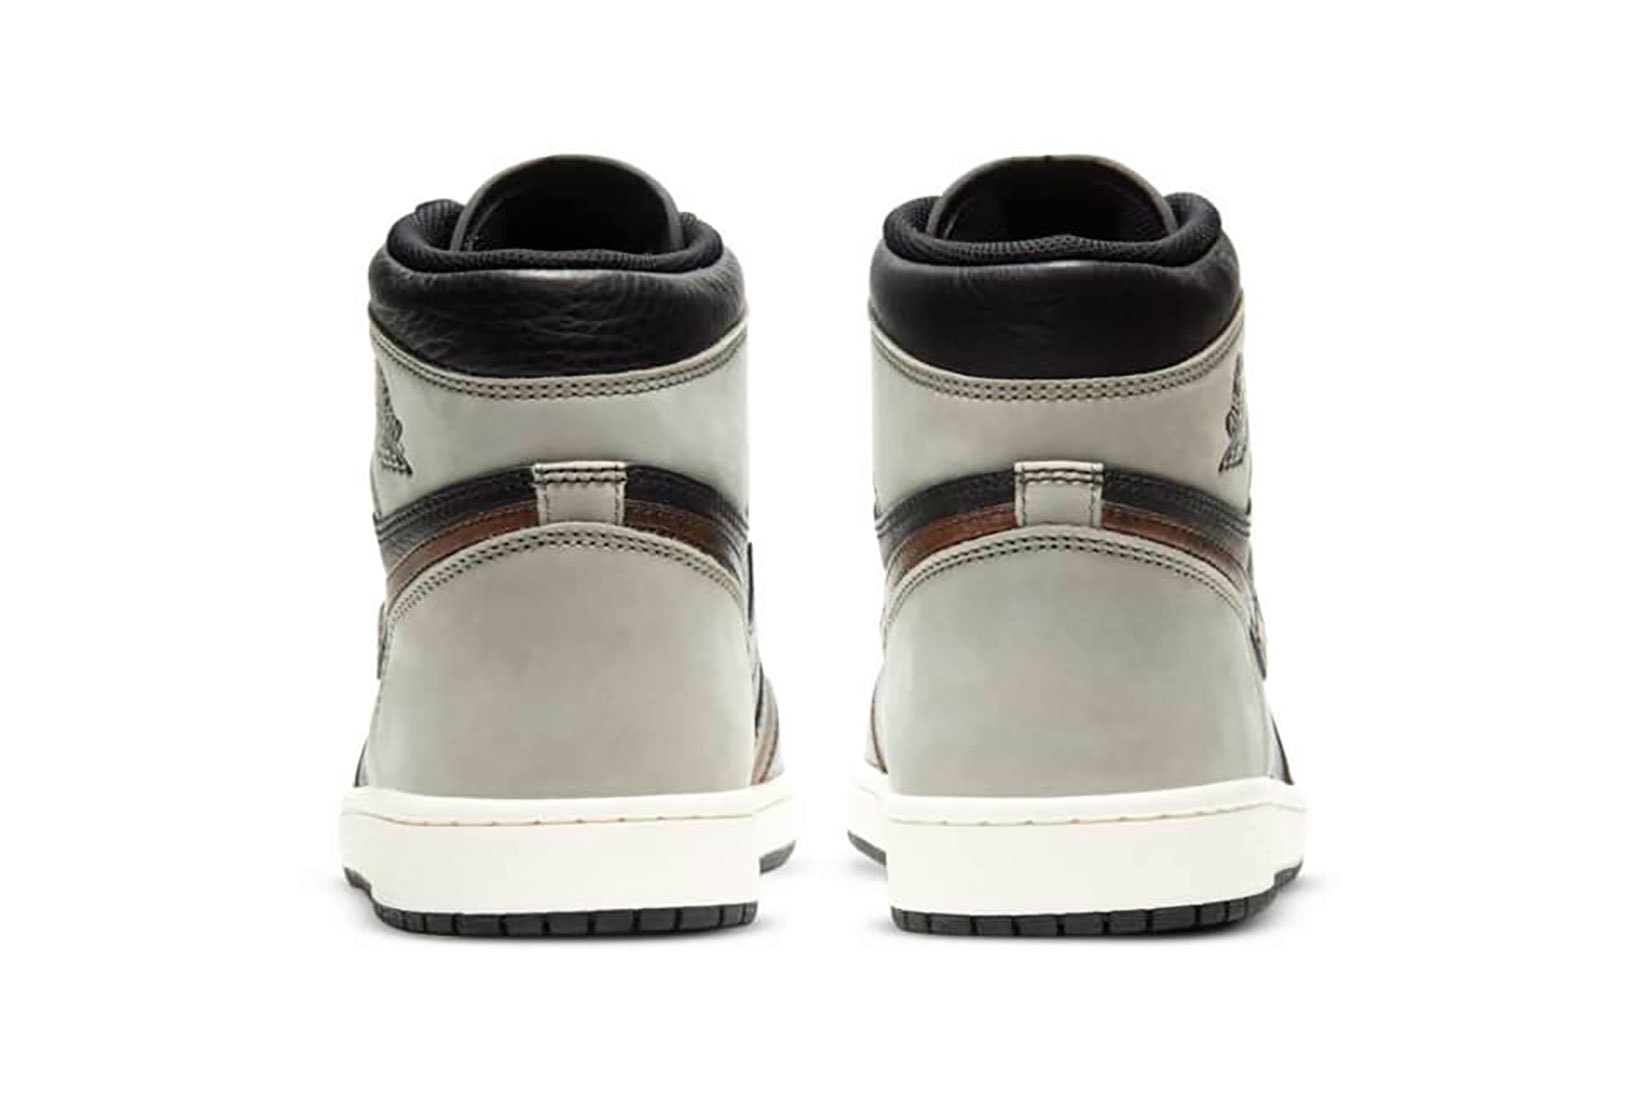 nike air jordan 1 aj1 sneakers rust shadow brown black colorway footwear shoes kicks sneakerhead heel